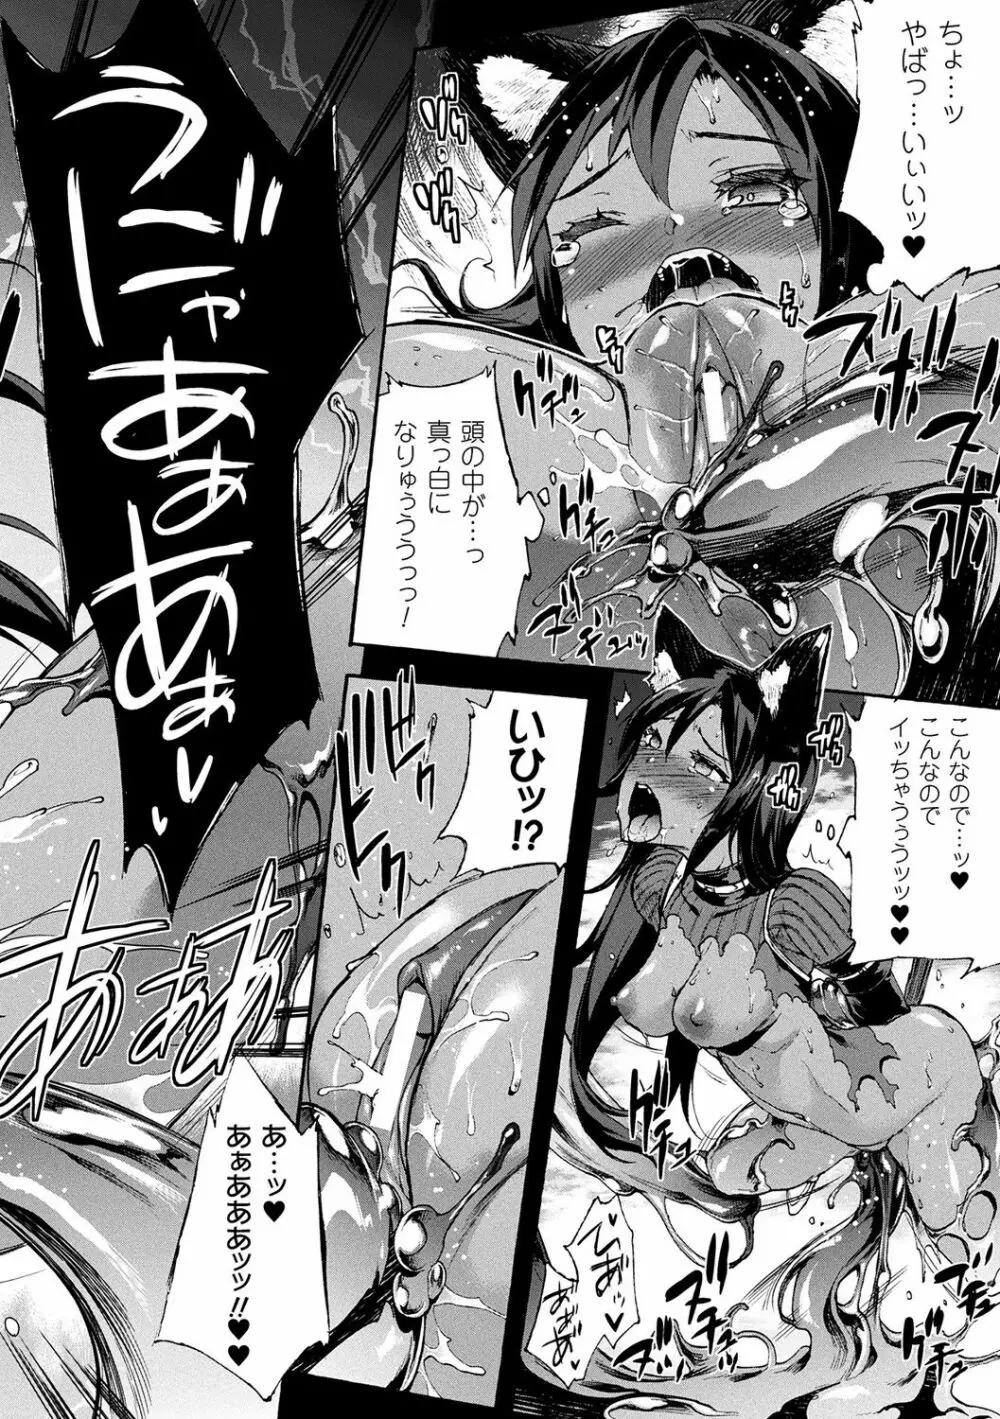 [エレクトさわる] 雷光神姫アイギスマギアII -PANDRA saga 3rd ignition- + 電子書籍特典デジタルポスター [DL版] 16ページ